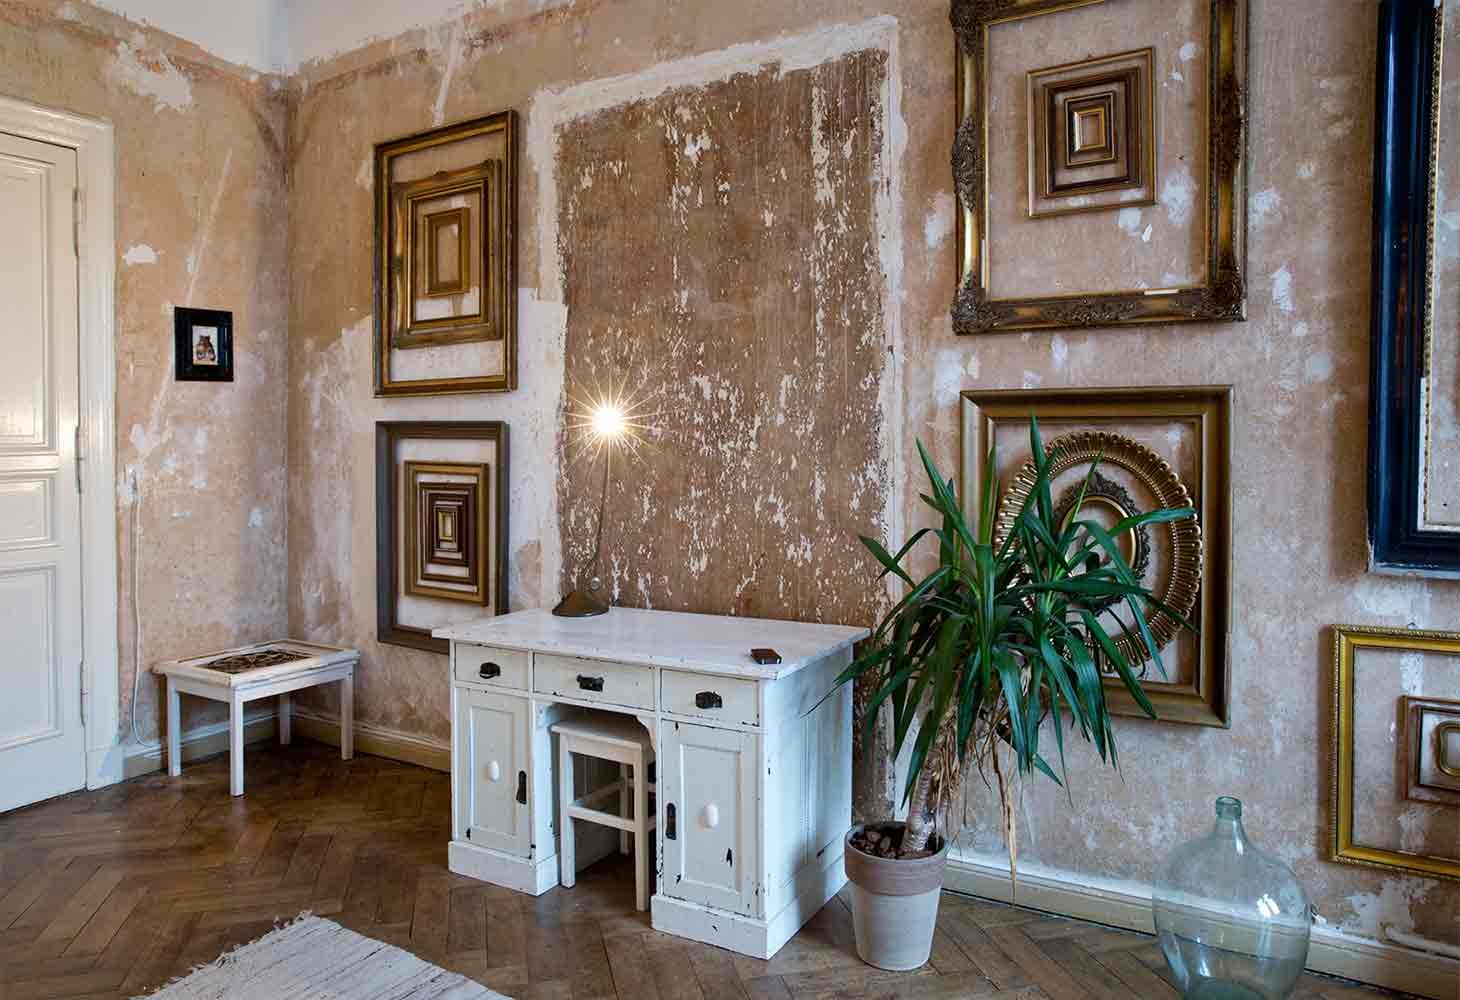 Das Gästewohnzimmer, Detail Wand und Rahmen #minimalismus ©Caterina Rancho